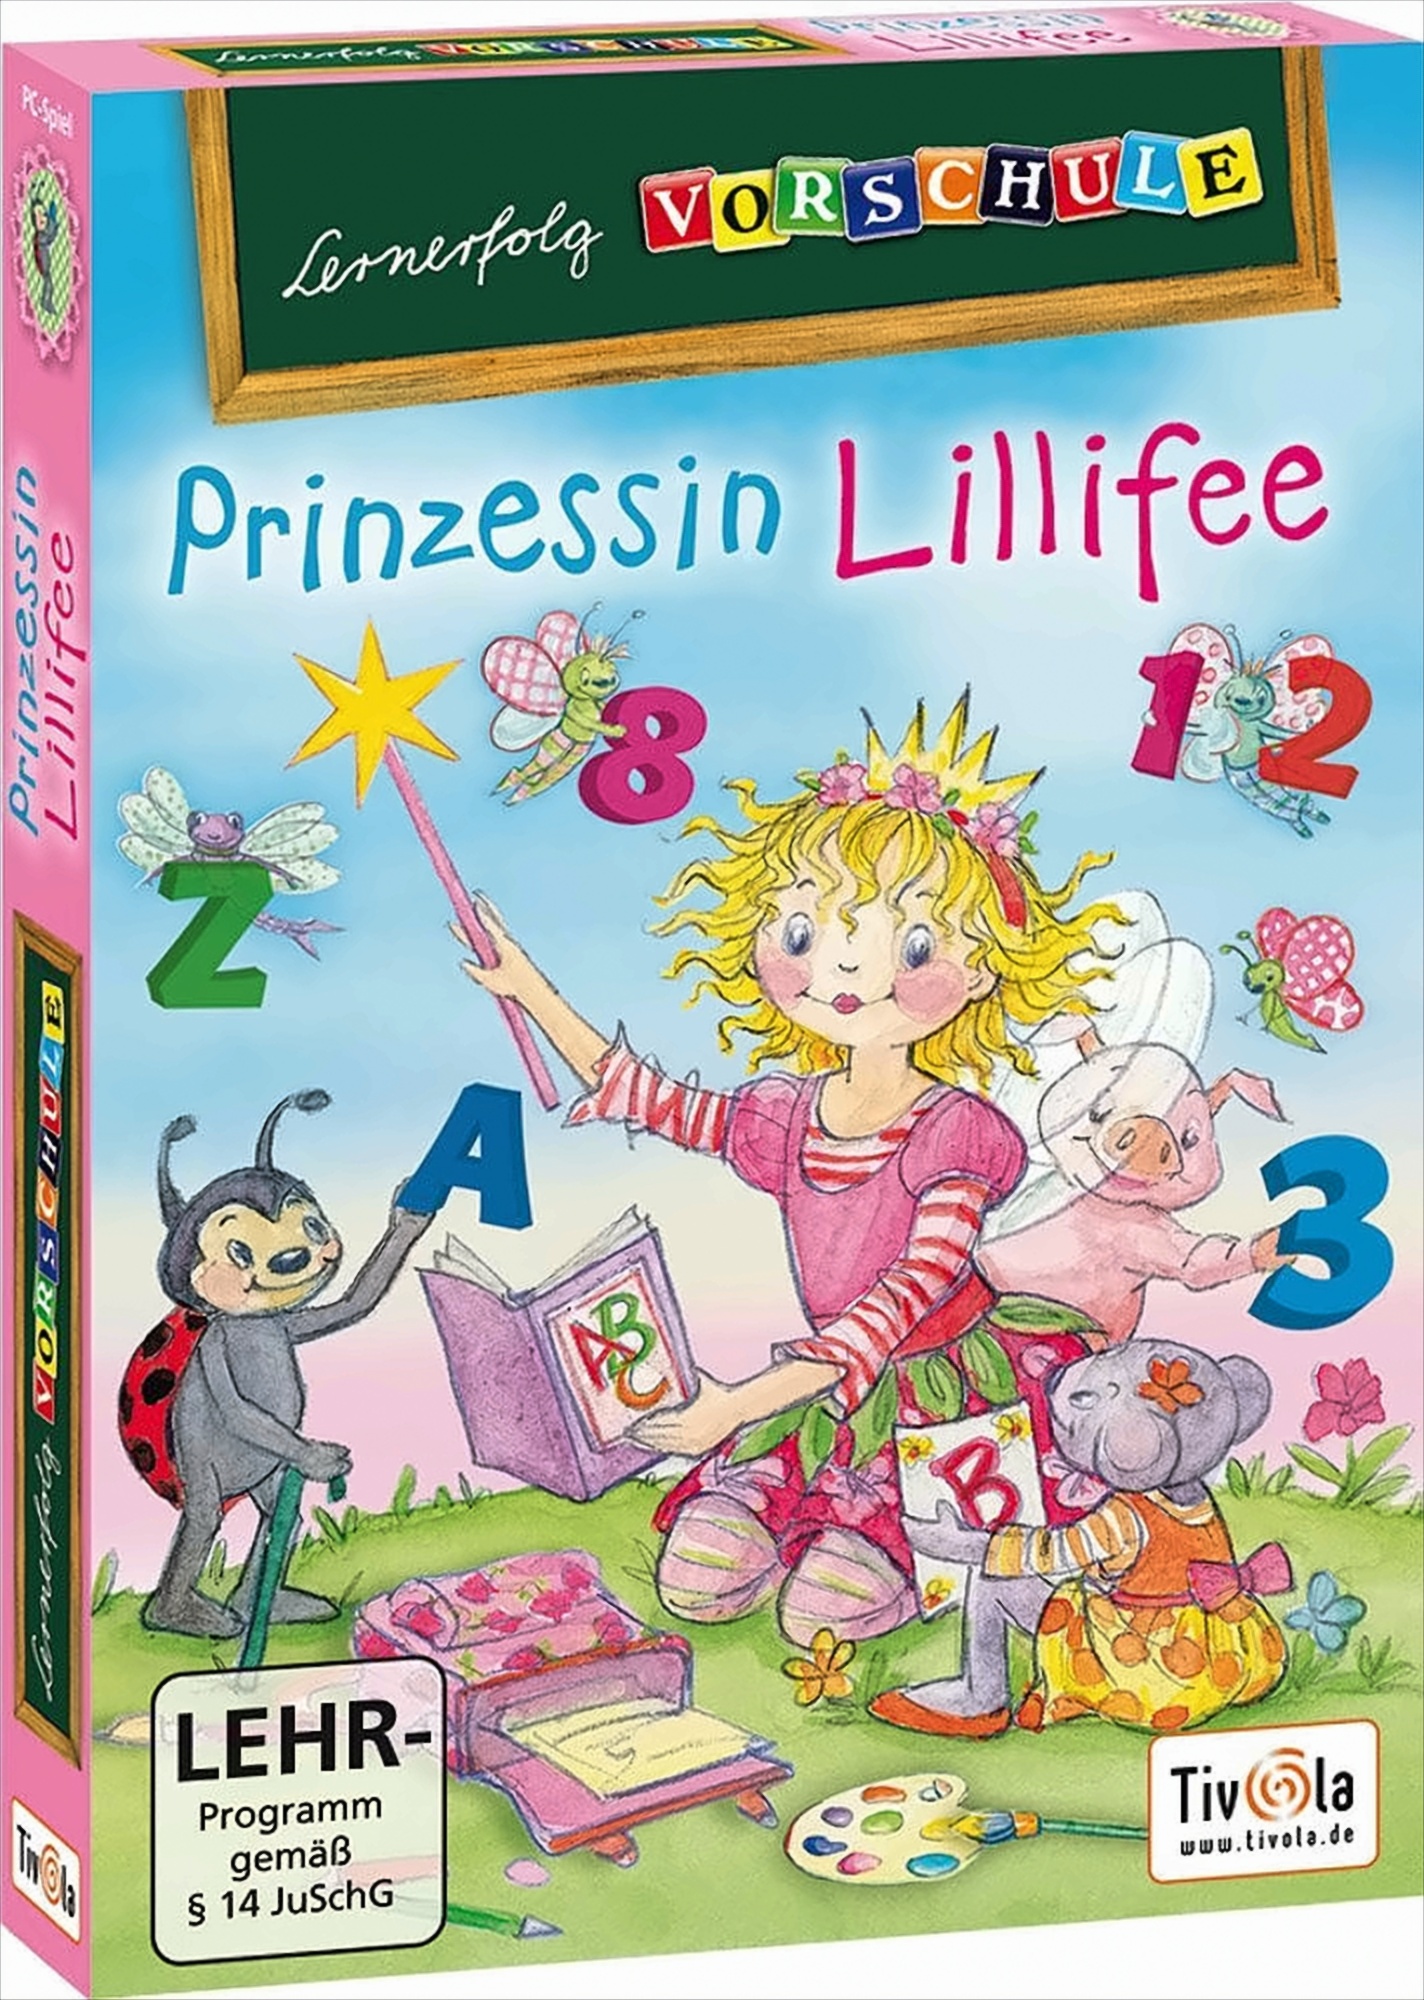 Lernerfolg Vorschule - Prinzessin Lillifee von Tivola